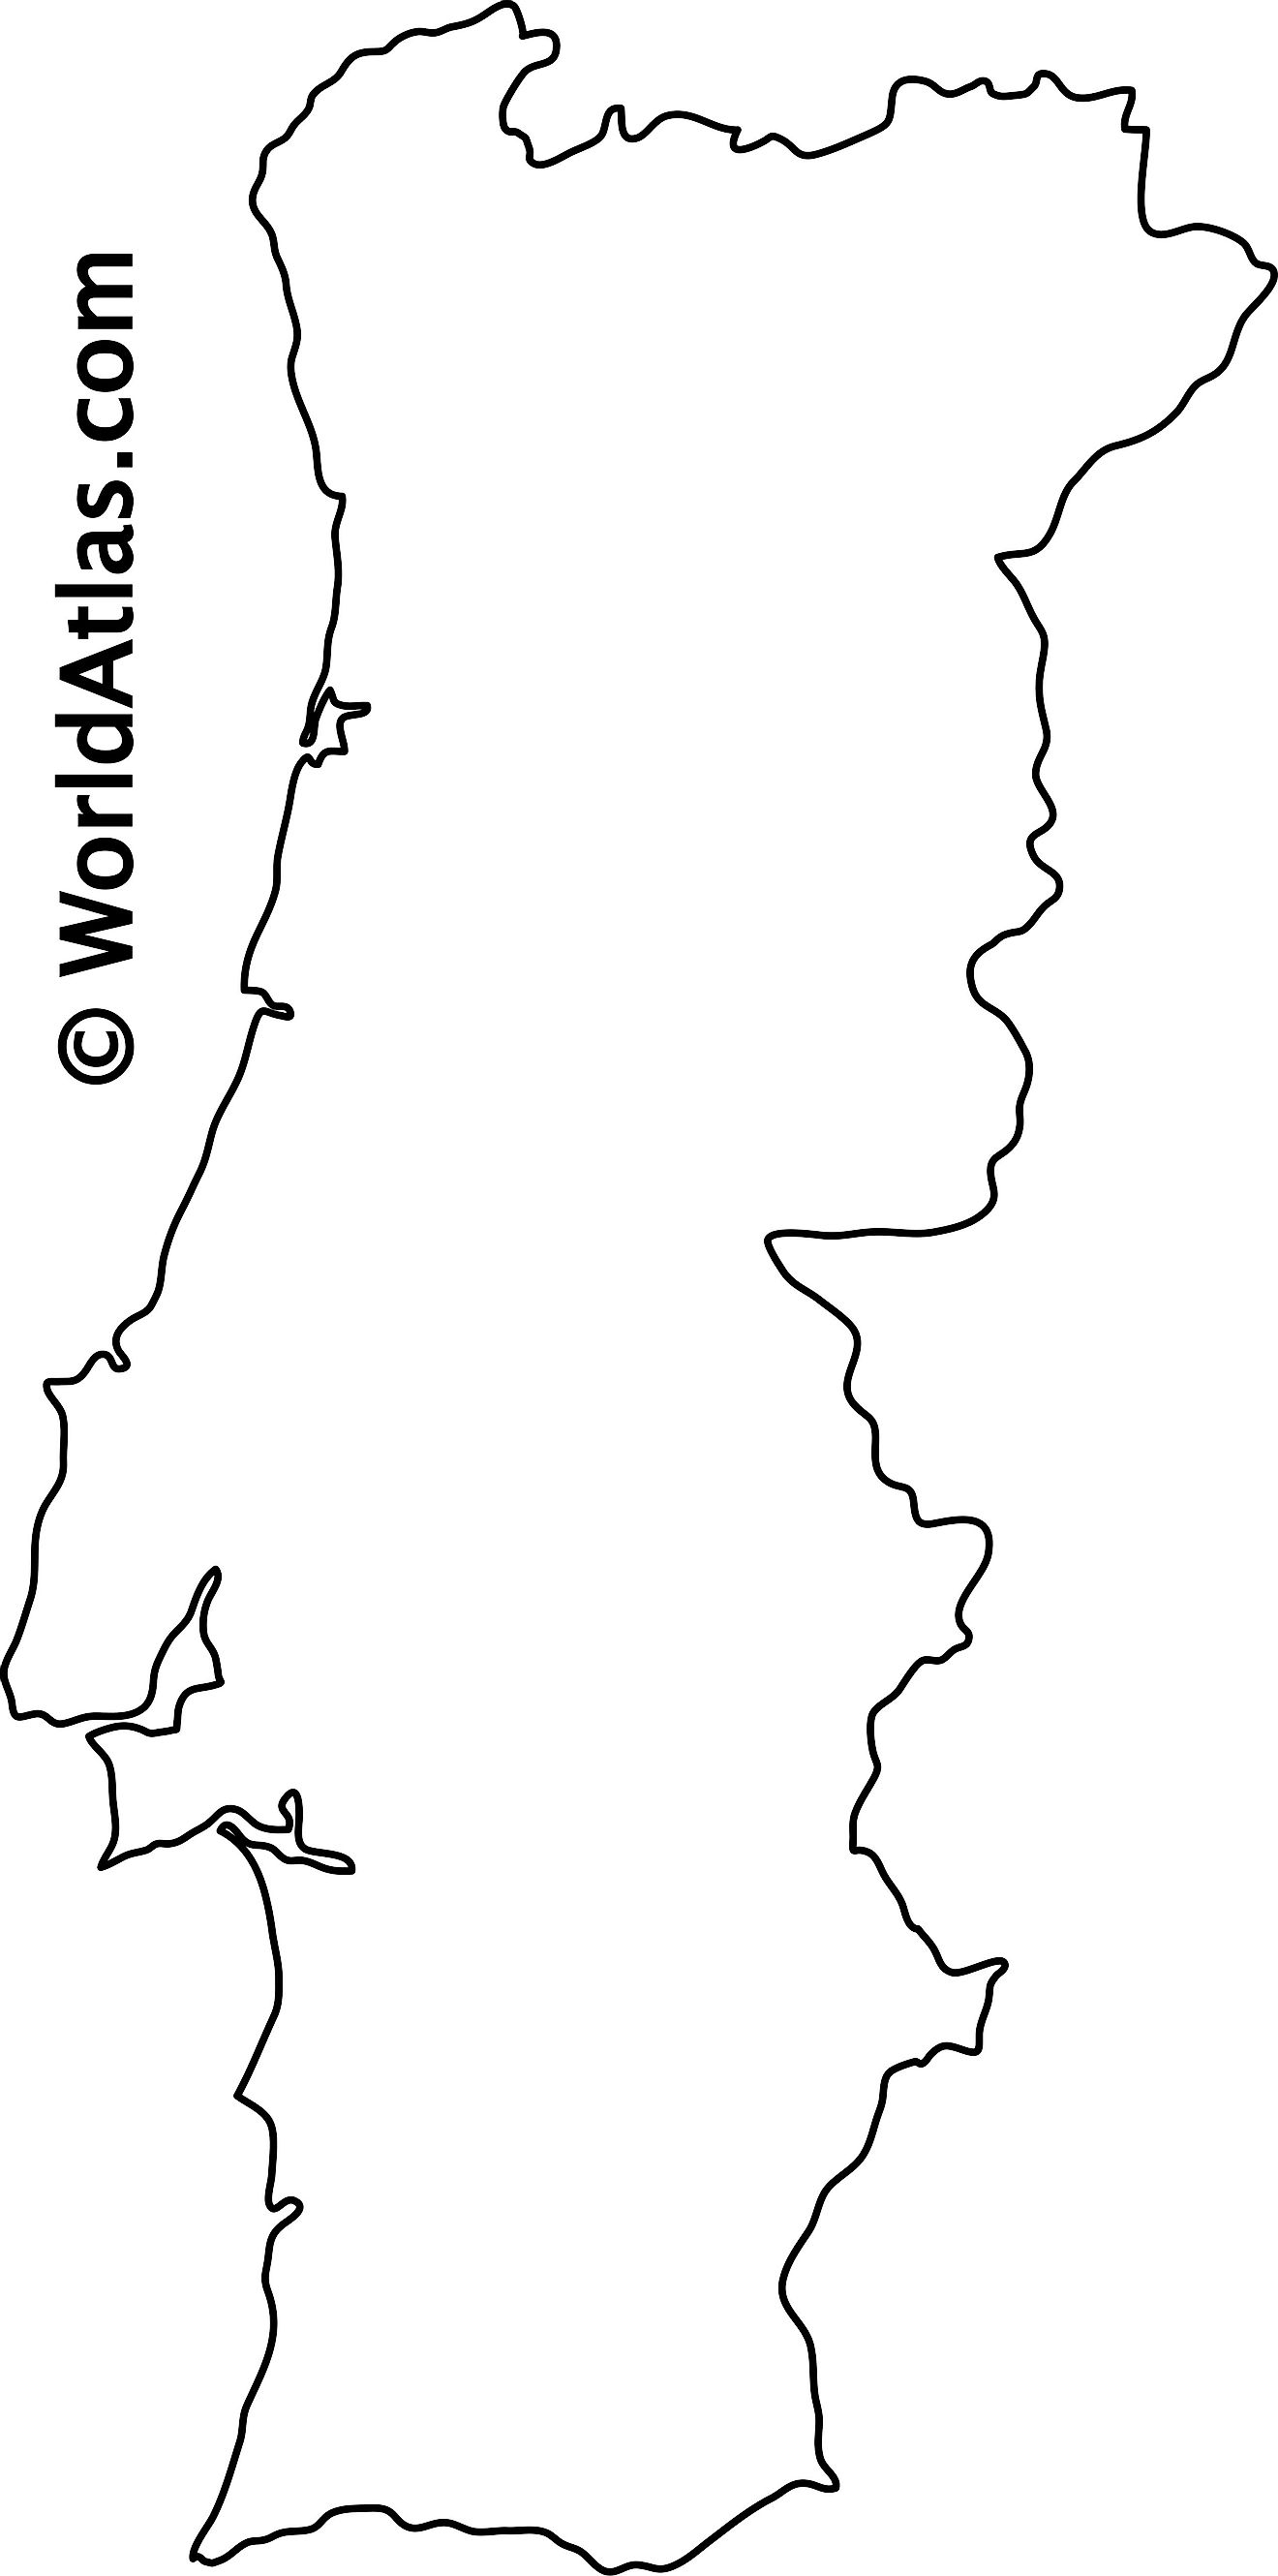 Mapa de contorno en blanco de Portugal